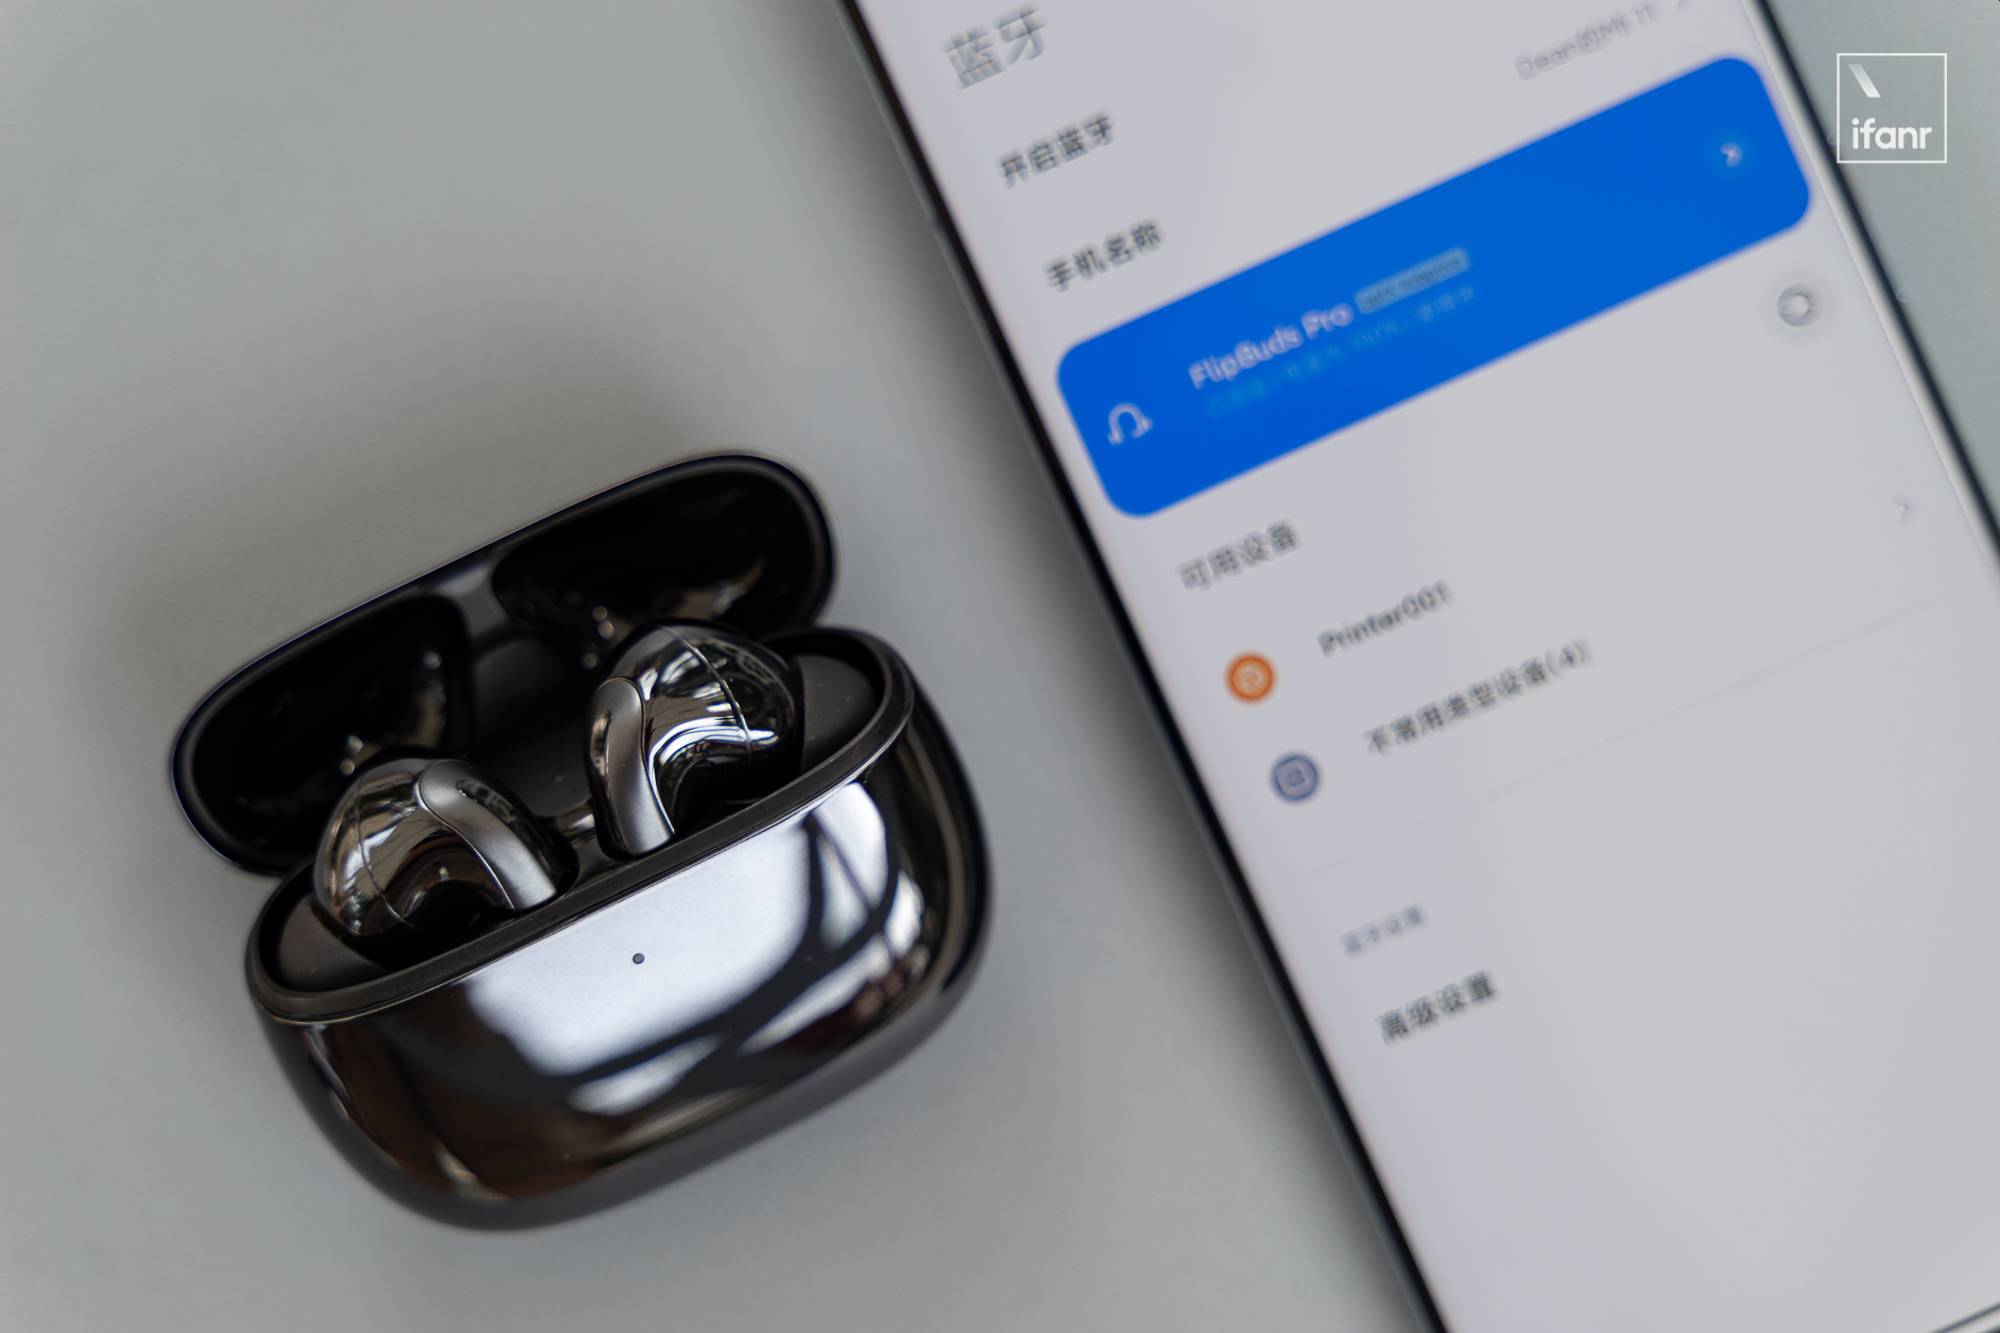 DSC06866 - Xiaomi Noise Cancelling Headphones Pro prima esperienza: entro mille yuan, eccezionale riduzione del rumore, buona qualità del suono